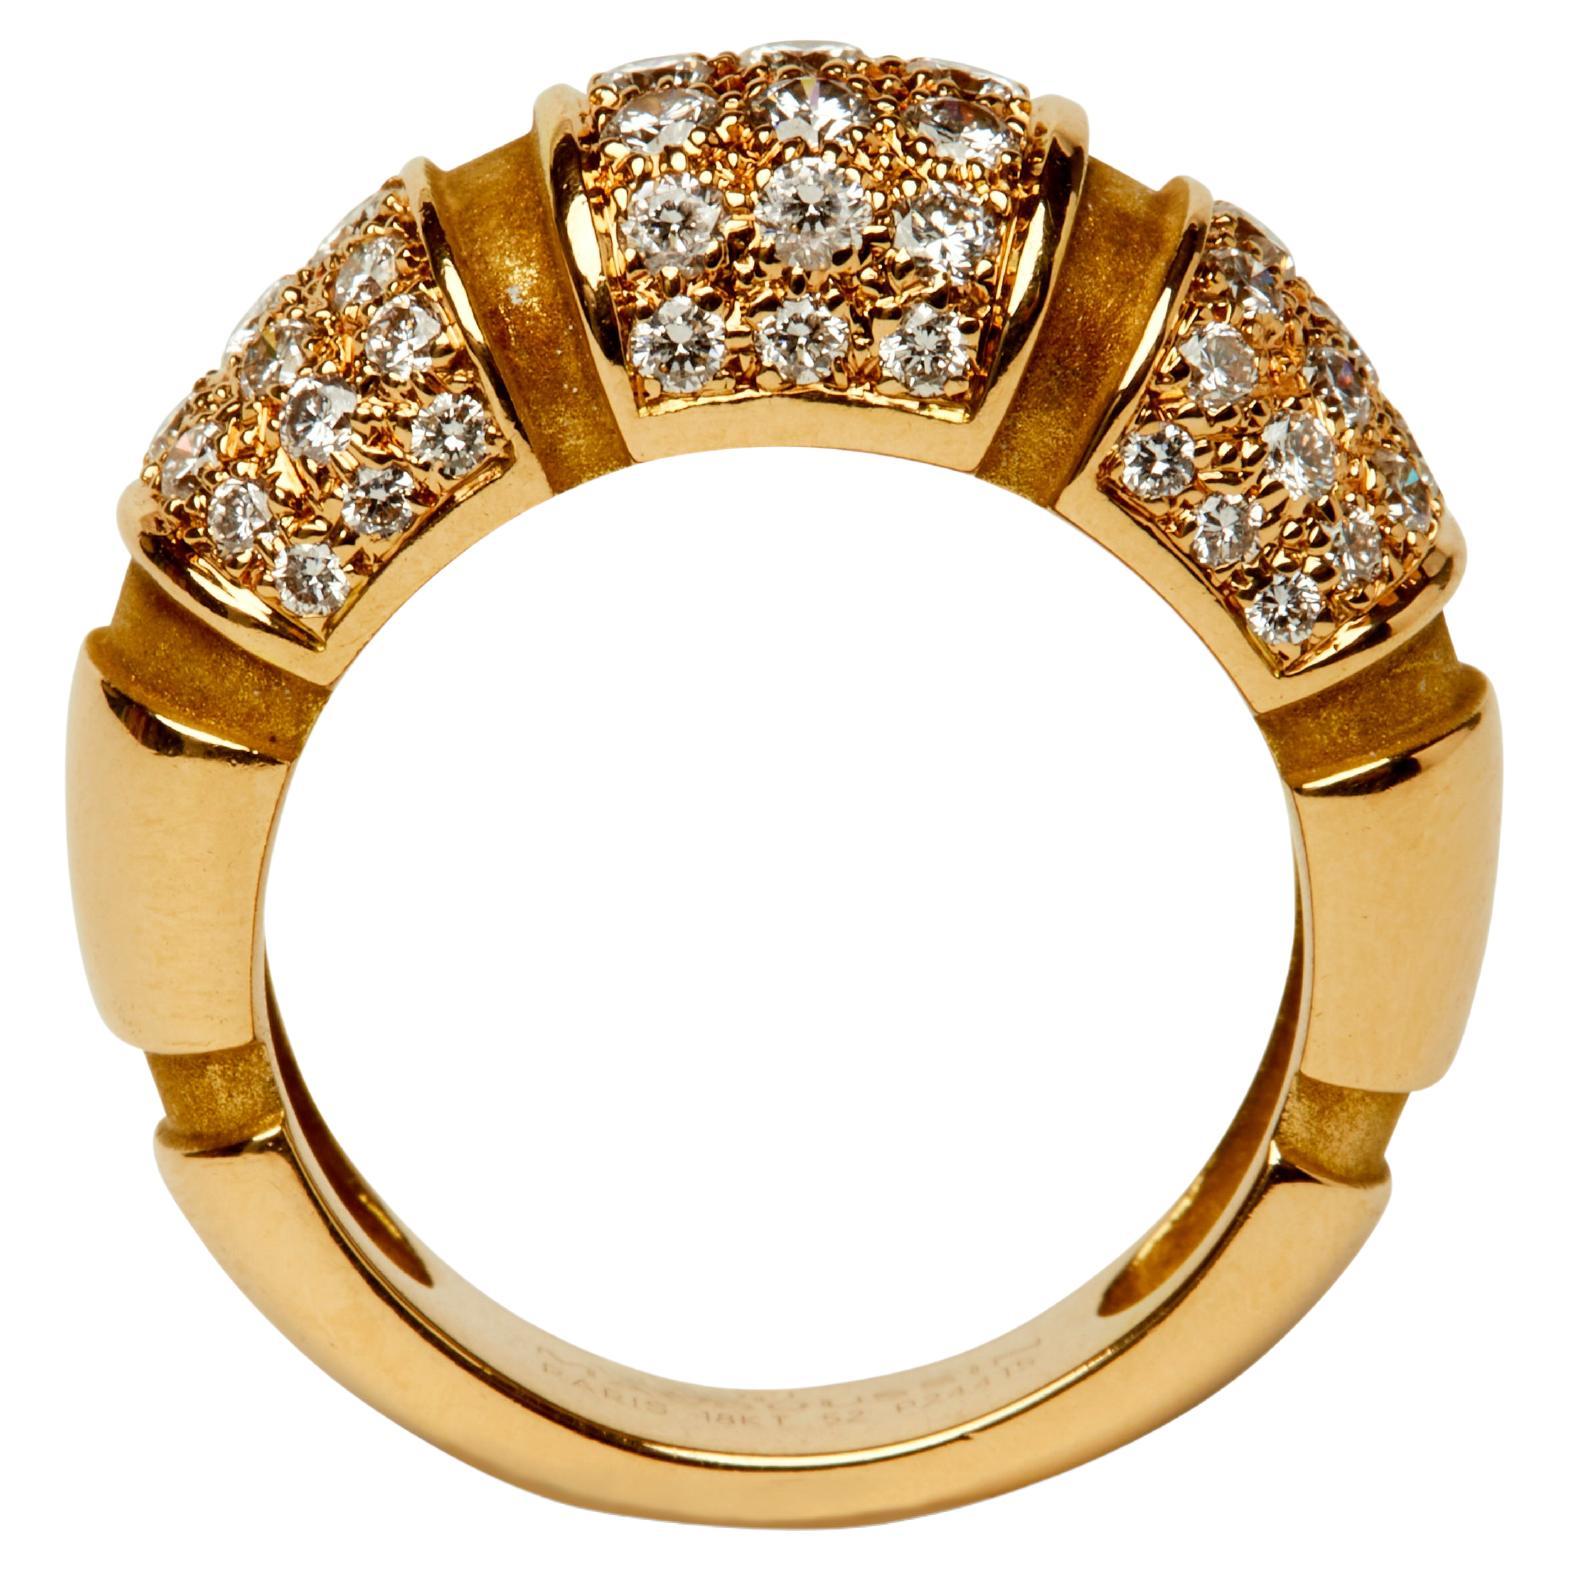 Cette bague bombée de Mauboussin est d'une élégante simplicité et peut être utilisée seule ou empilée. Le dôme nervuré en or jaune est divisé en trois sections serties de fins diamants blancs ronds de taille brillant.

Taille 6
63 diamants ronds de